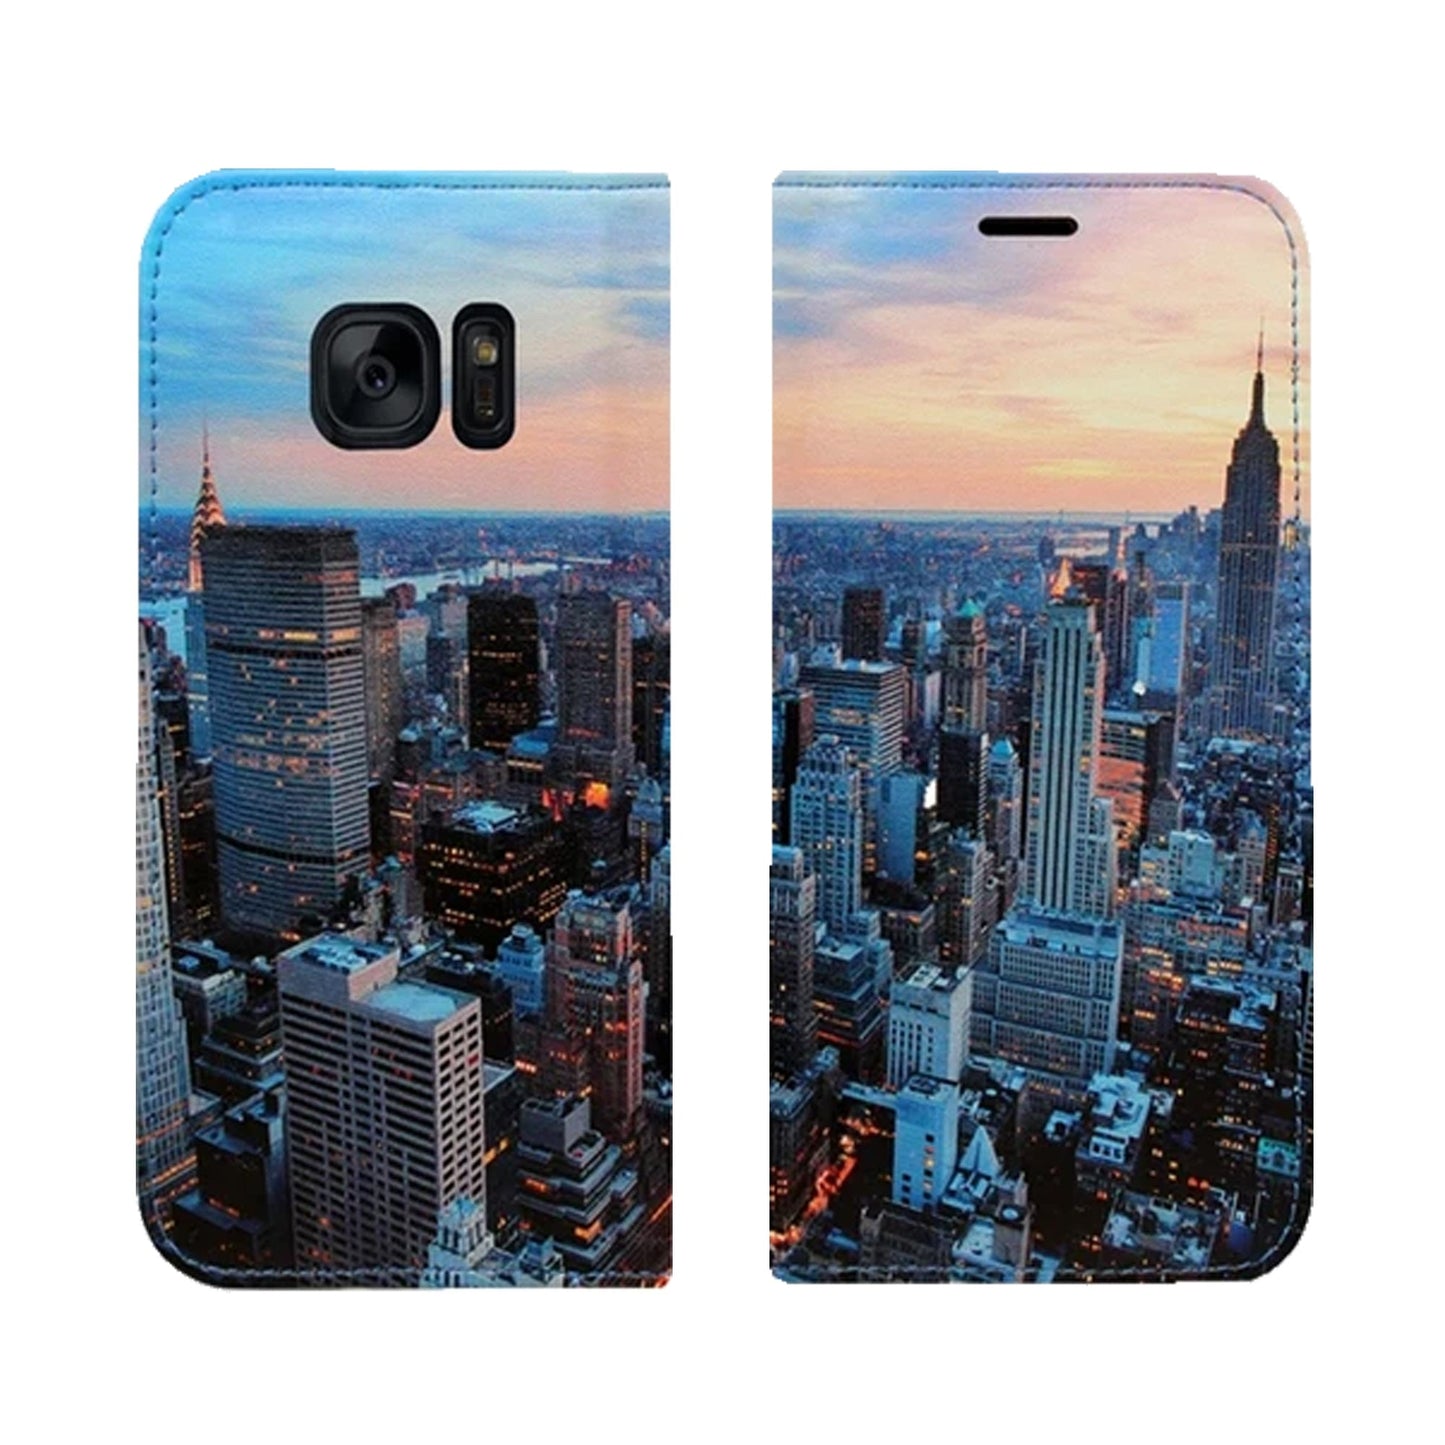 Coque panoramique New York City pour Samsung Galaxy S7